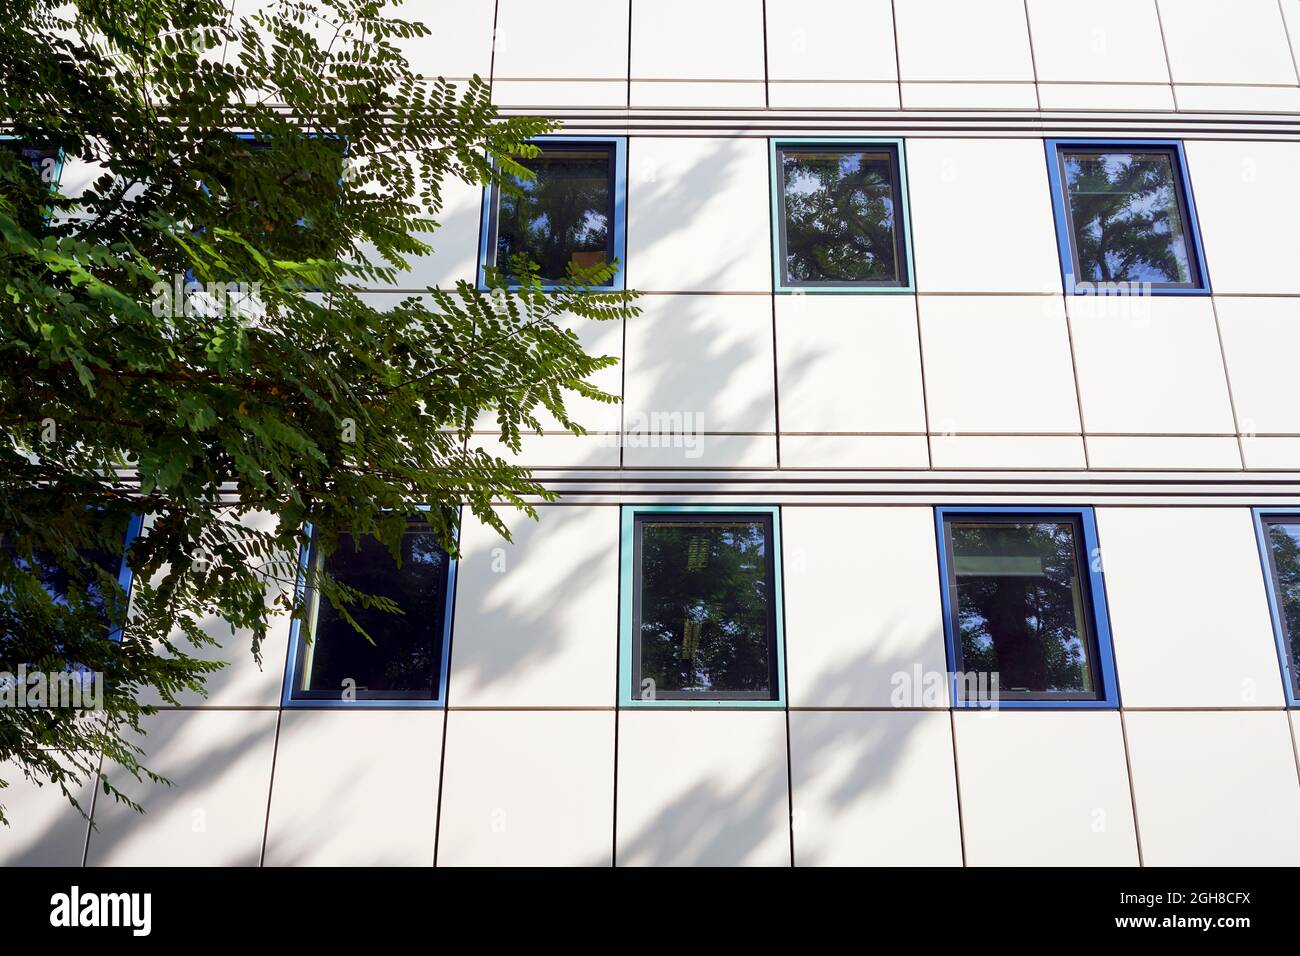 Sombras proyectadas en un edificio por ramas y hojas de árbol Foto de stock